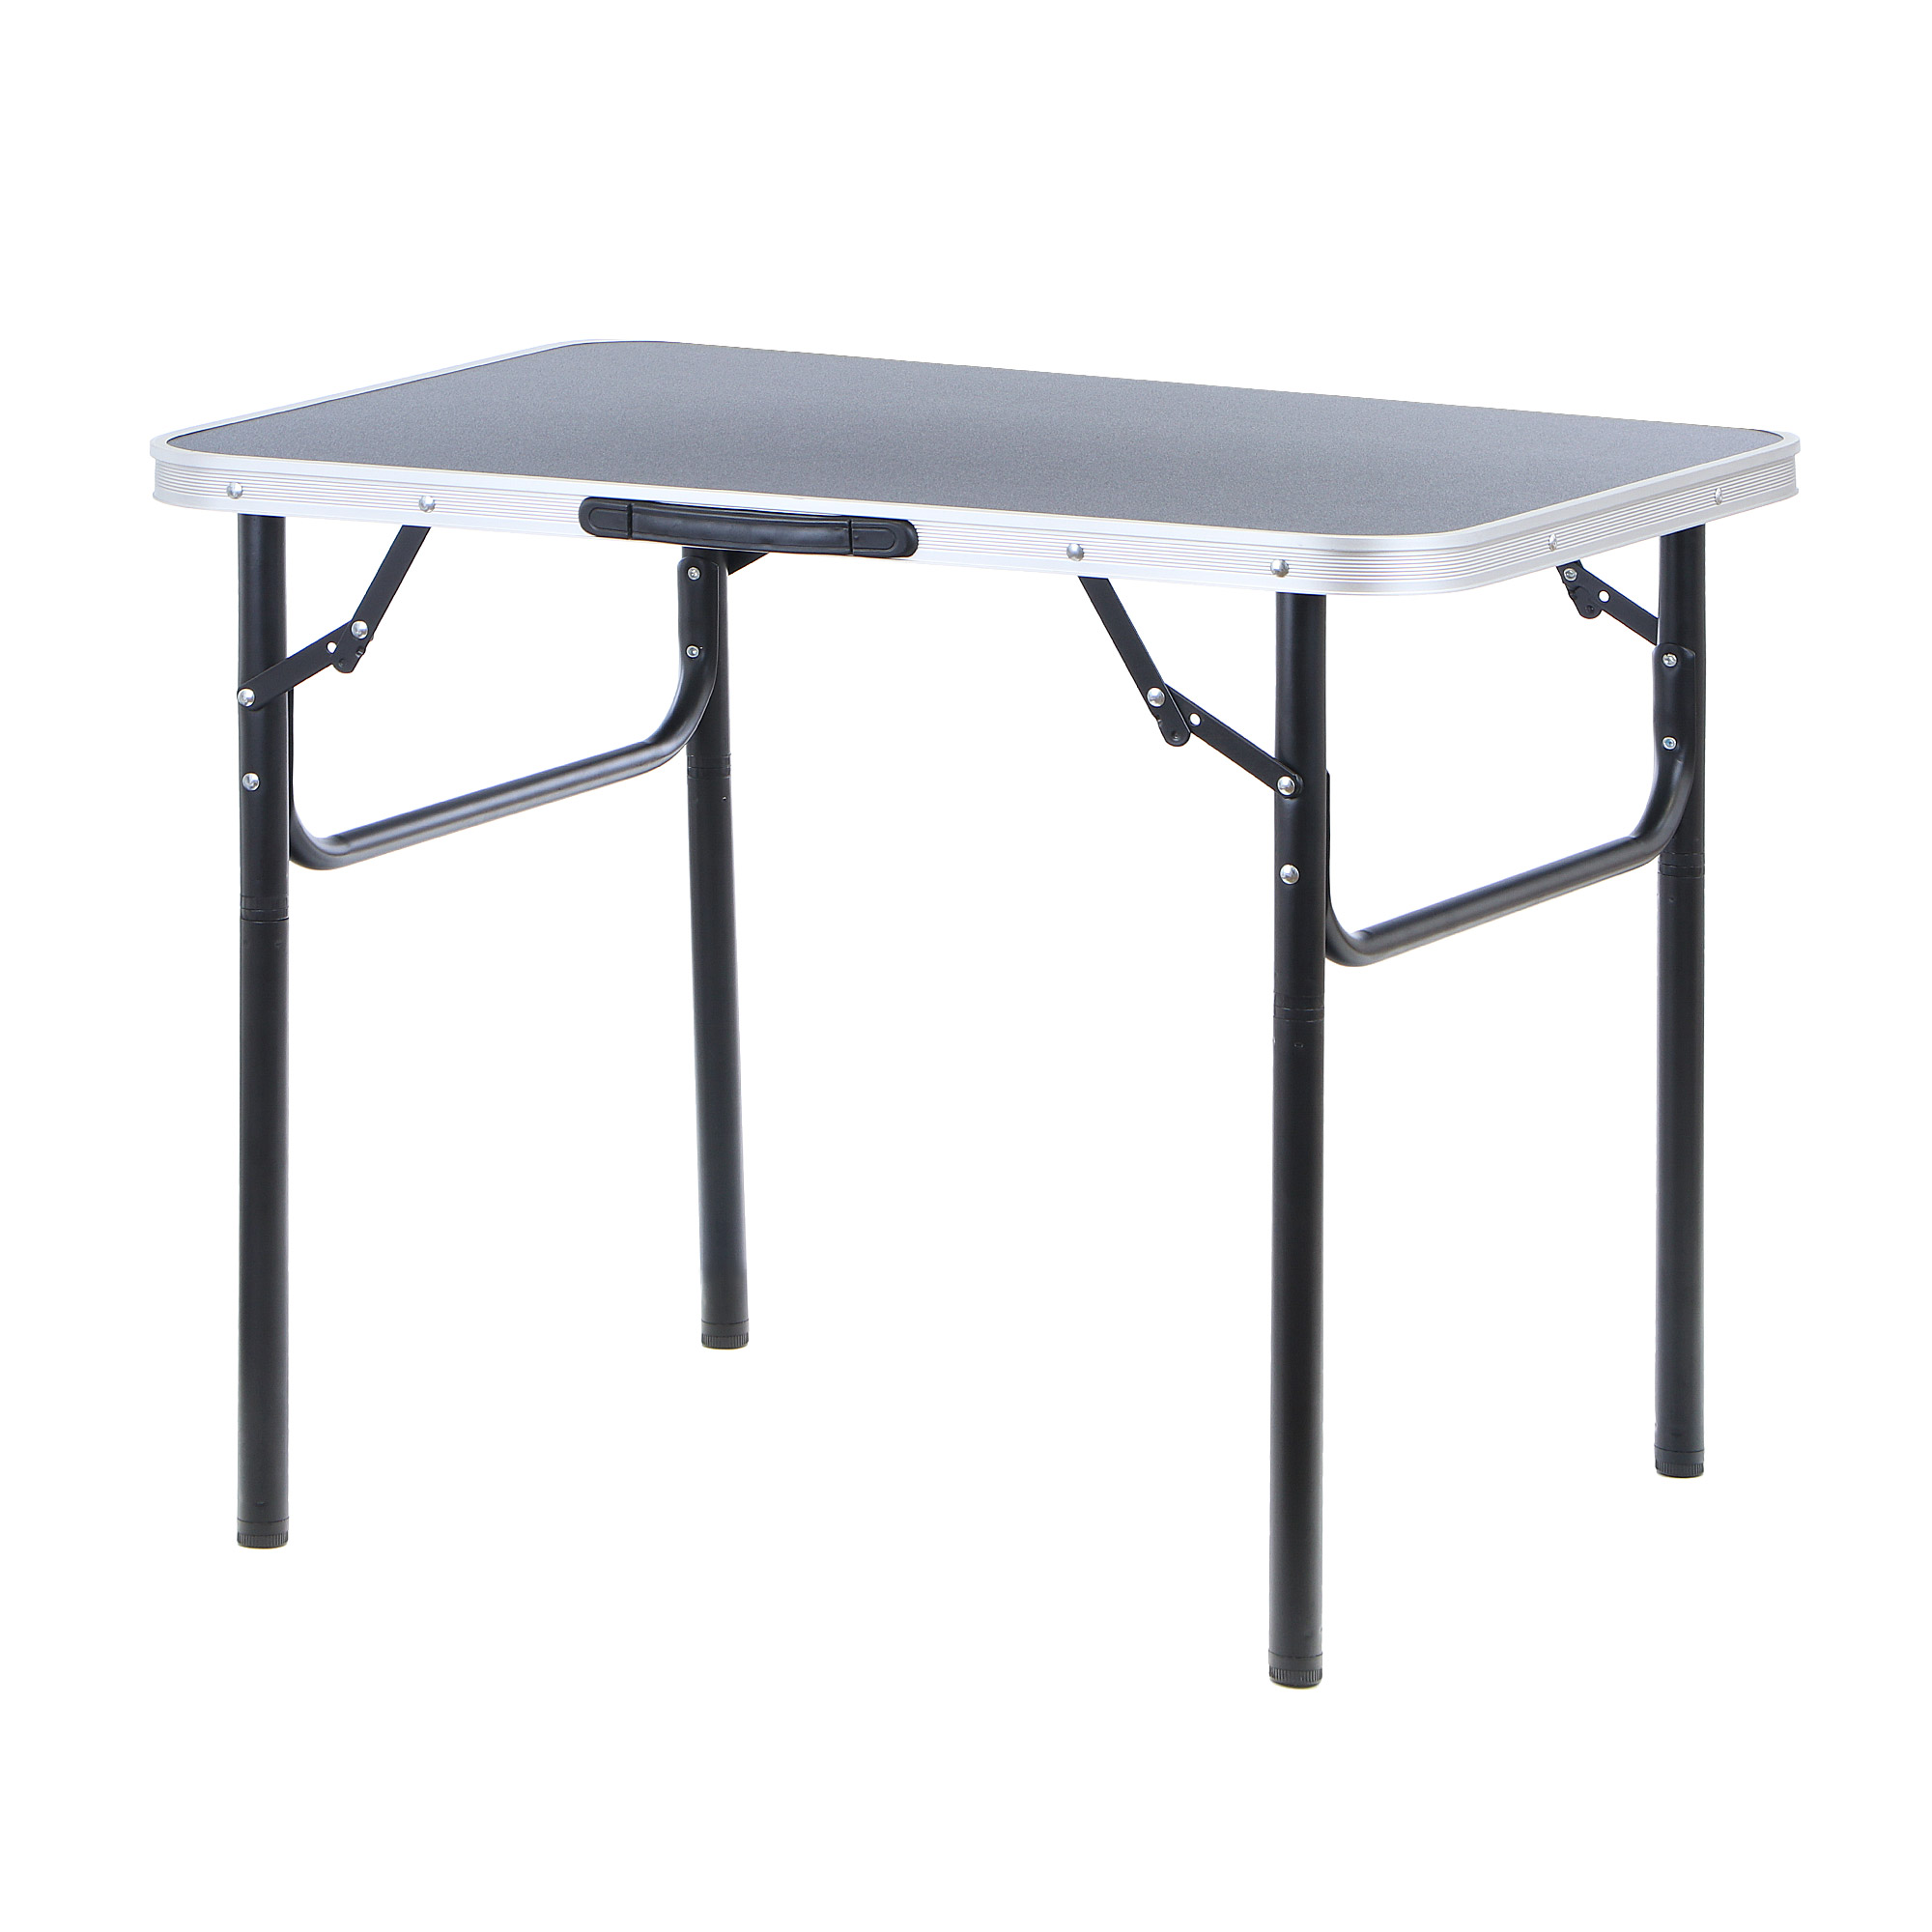 Стол для кемпинга складной Koopman furniture 75x55x25/60cm, цвет черный, размер 75x55x25/60 см - фото 1